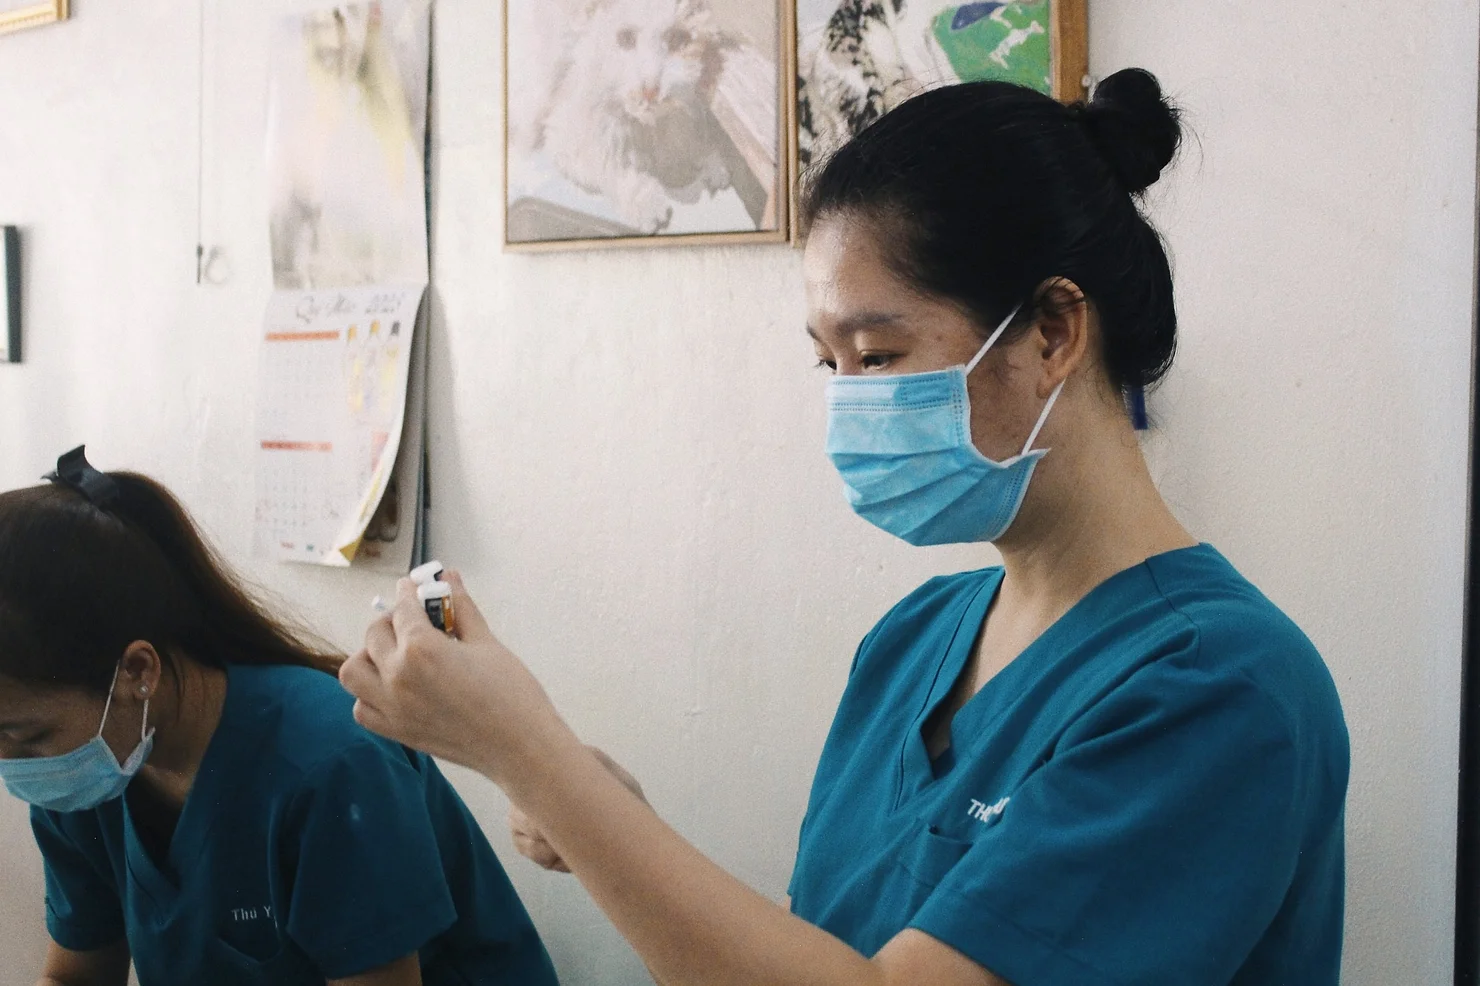 Bác sĩ thú y Như Ý: Quan sát và “lắng nghe” động vật để chăm lo chữa trị đúng cách